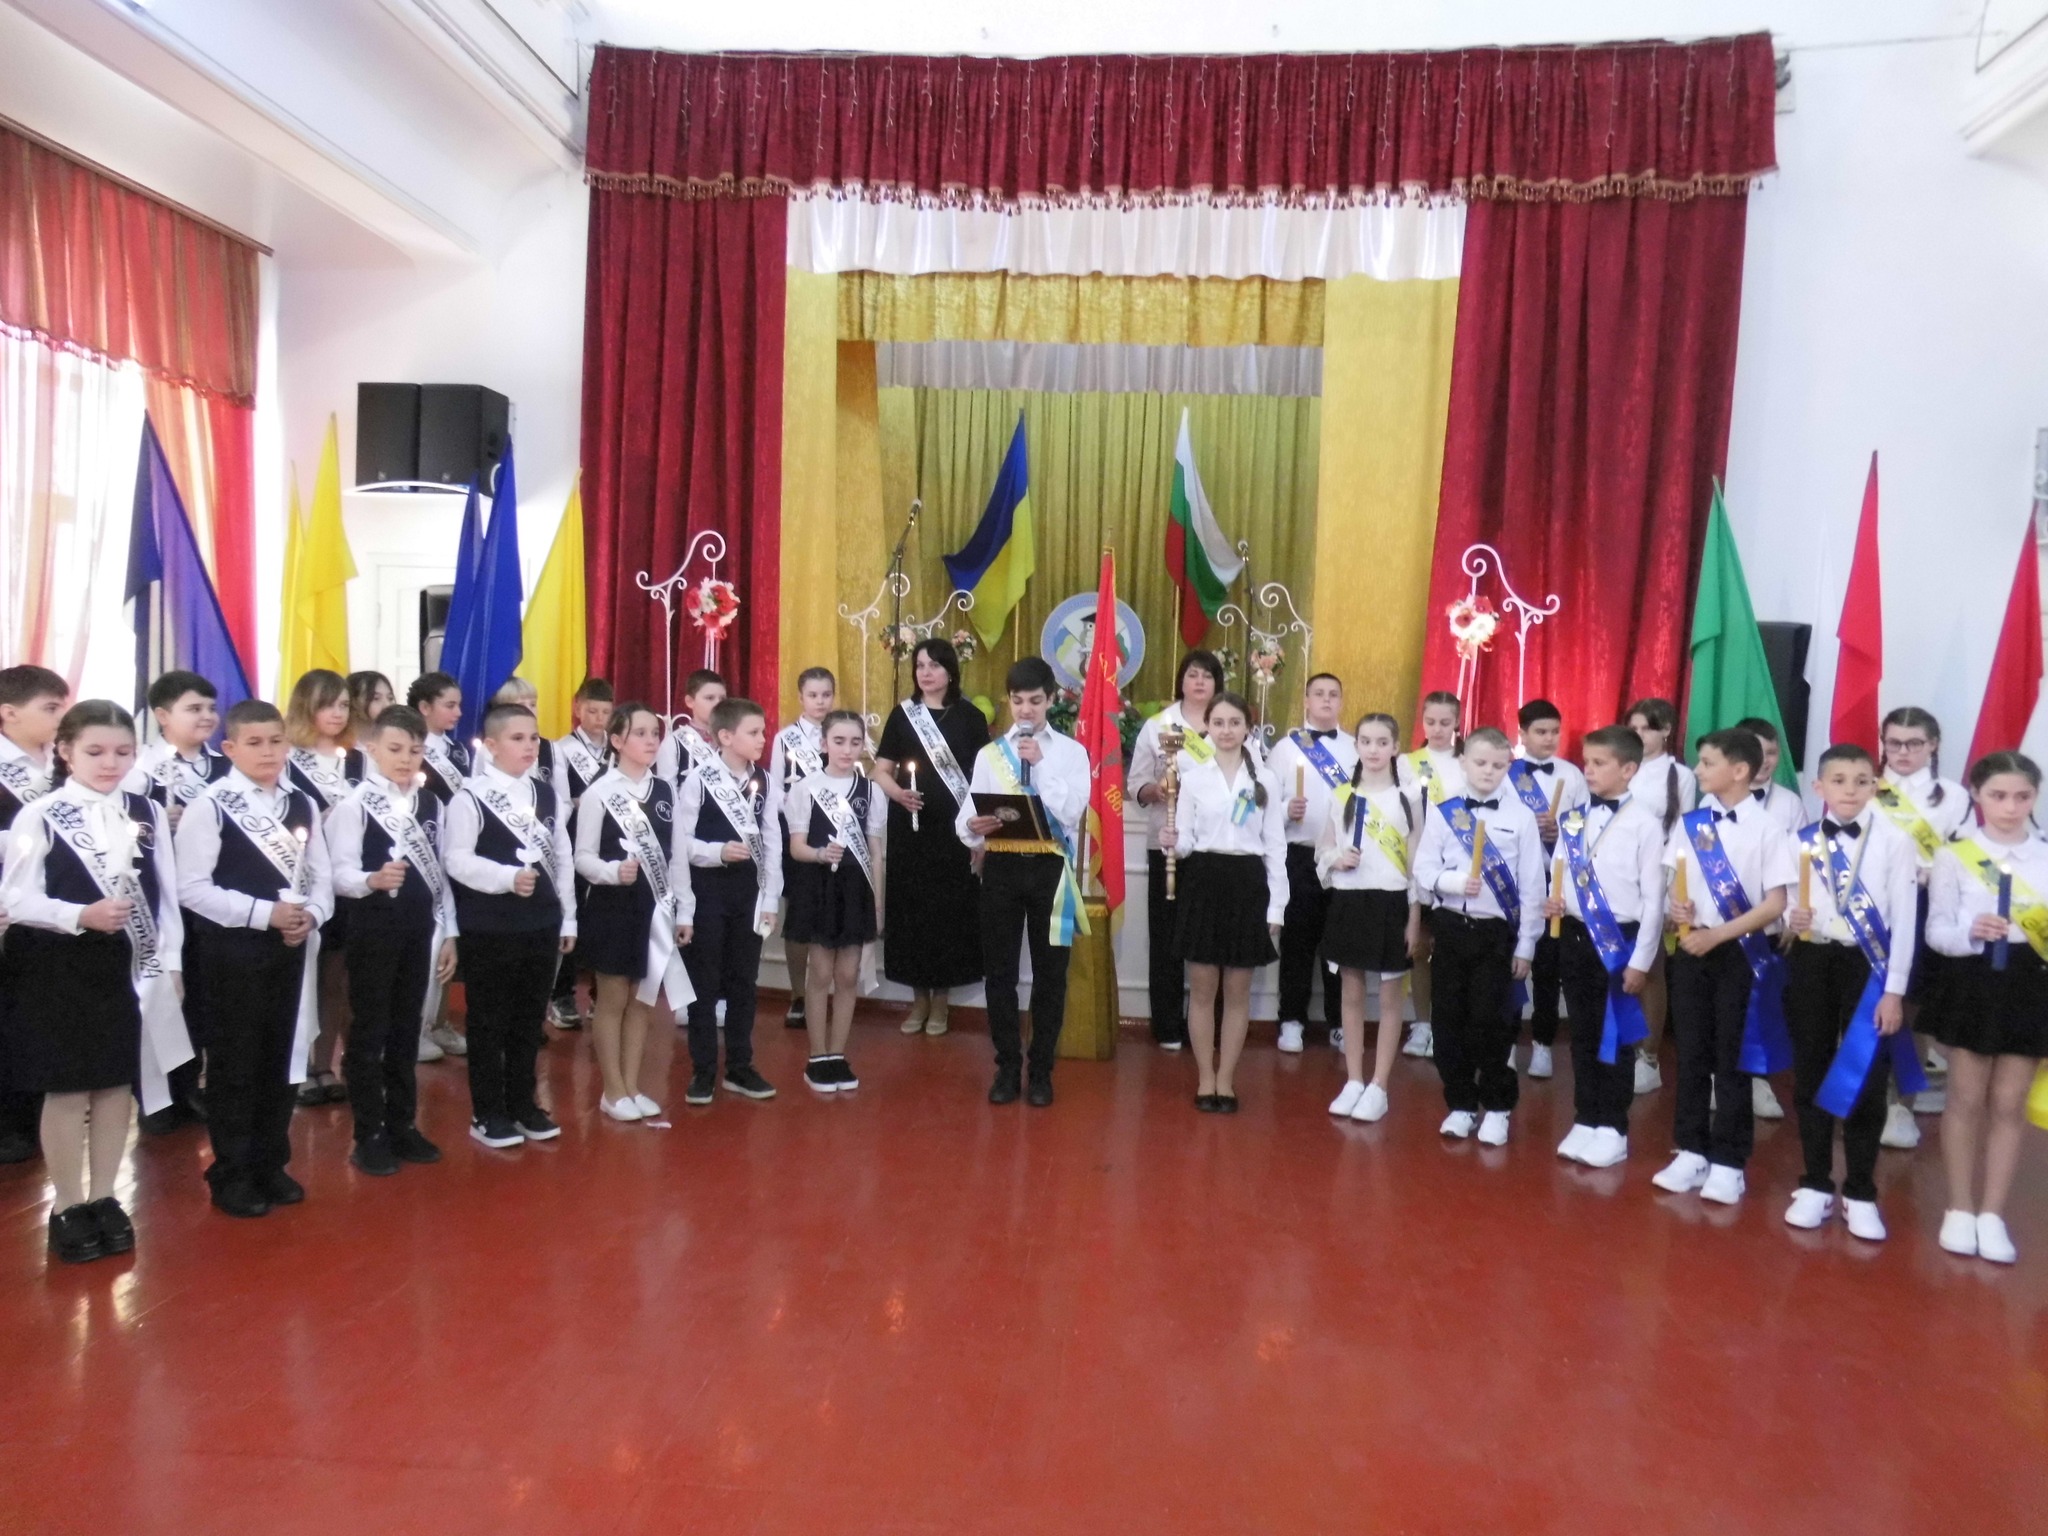 Посвящение в гимназисты и «Апрельский звездопад»: первая в Бессарабии болгарская гимназия отметила 203-летие Г. С. Раковского, имя которого носит